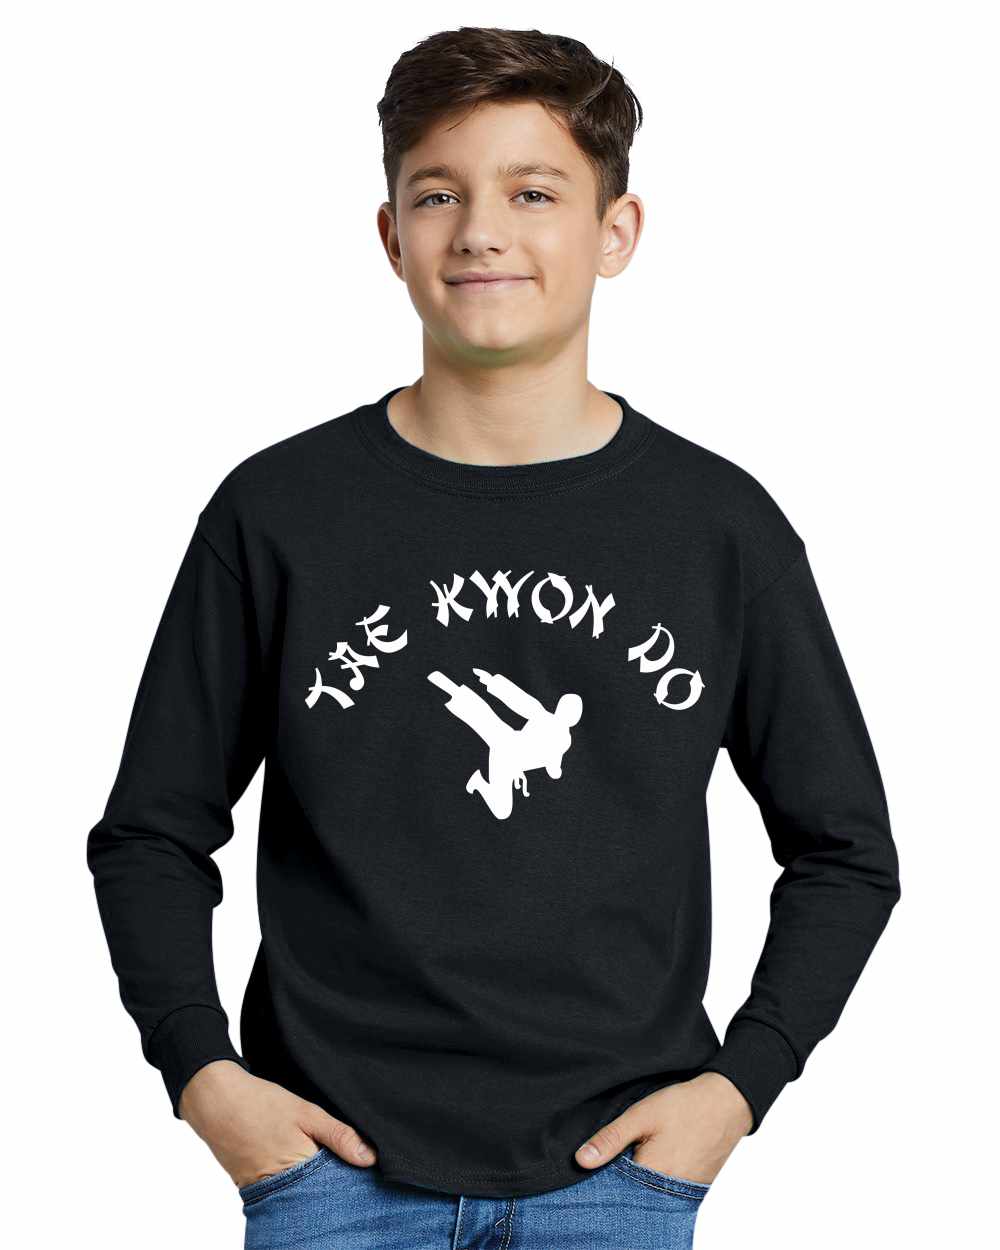 TAE KWON DO on Youth Long Sleeve Shirt (#748-203)